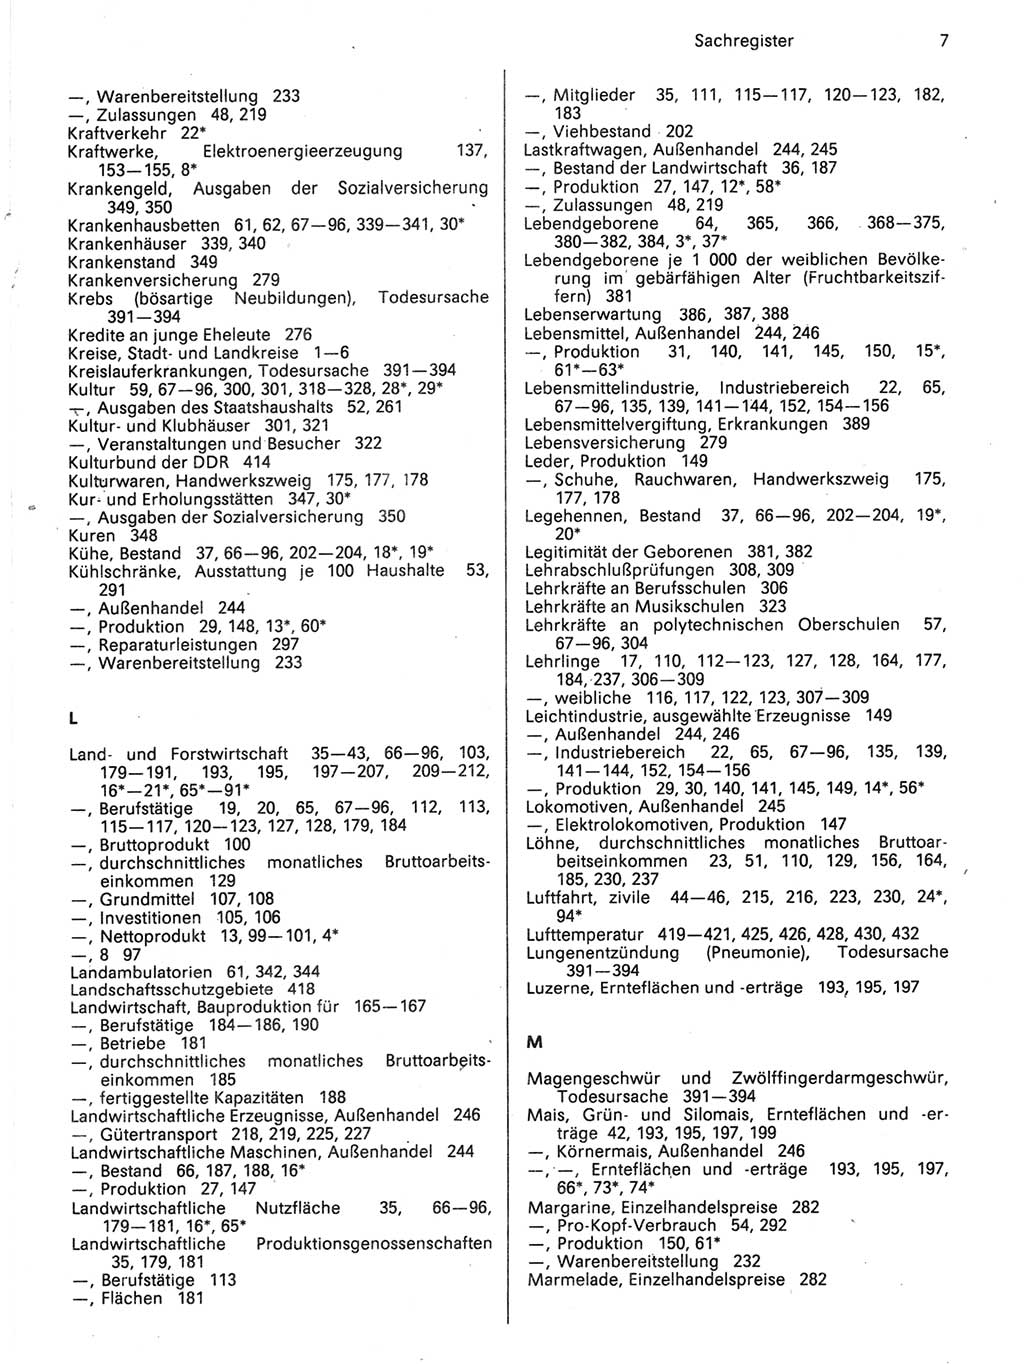 Statistisches Jahrbuch der Deutschen Demokratischen Republik (DDR) 1989, Seite 7 (Stat. Jb. DDR 1989, S. 7)